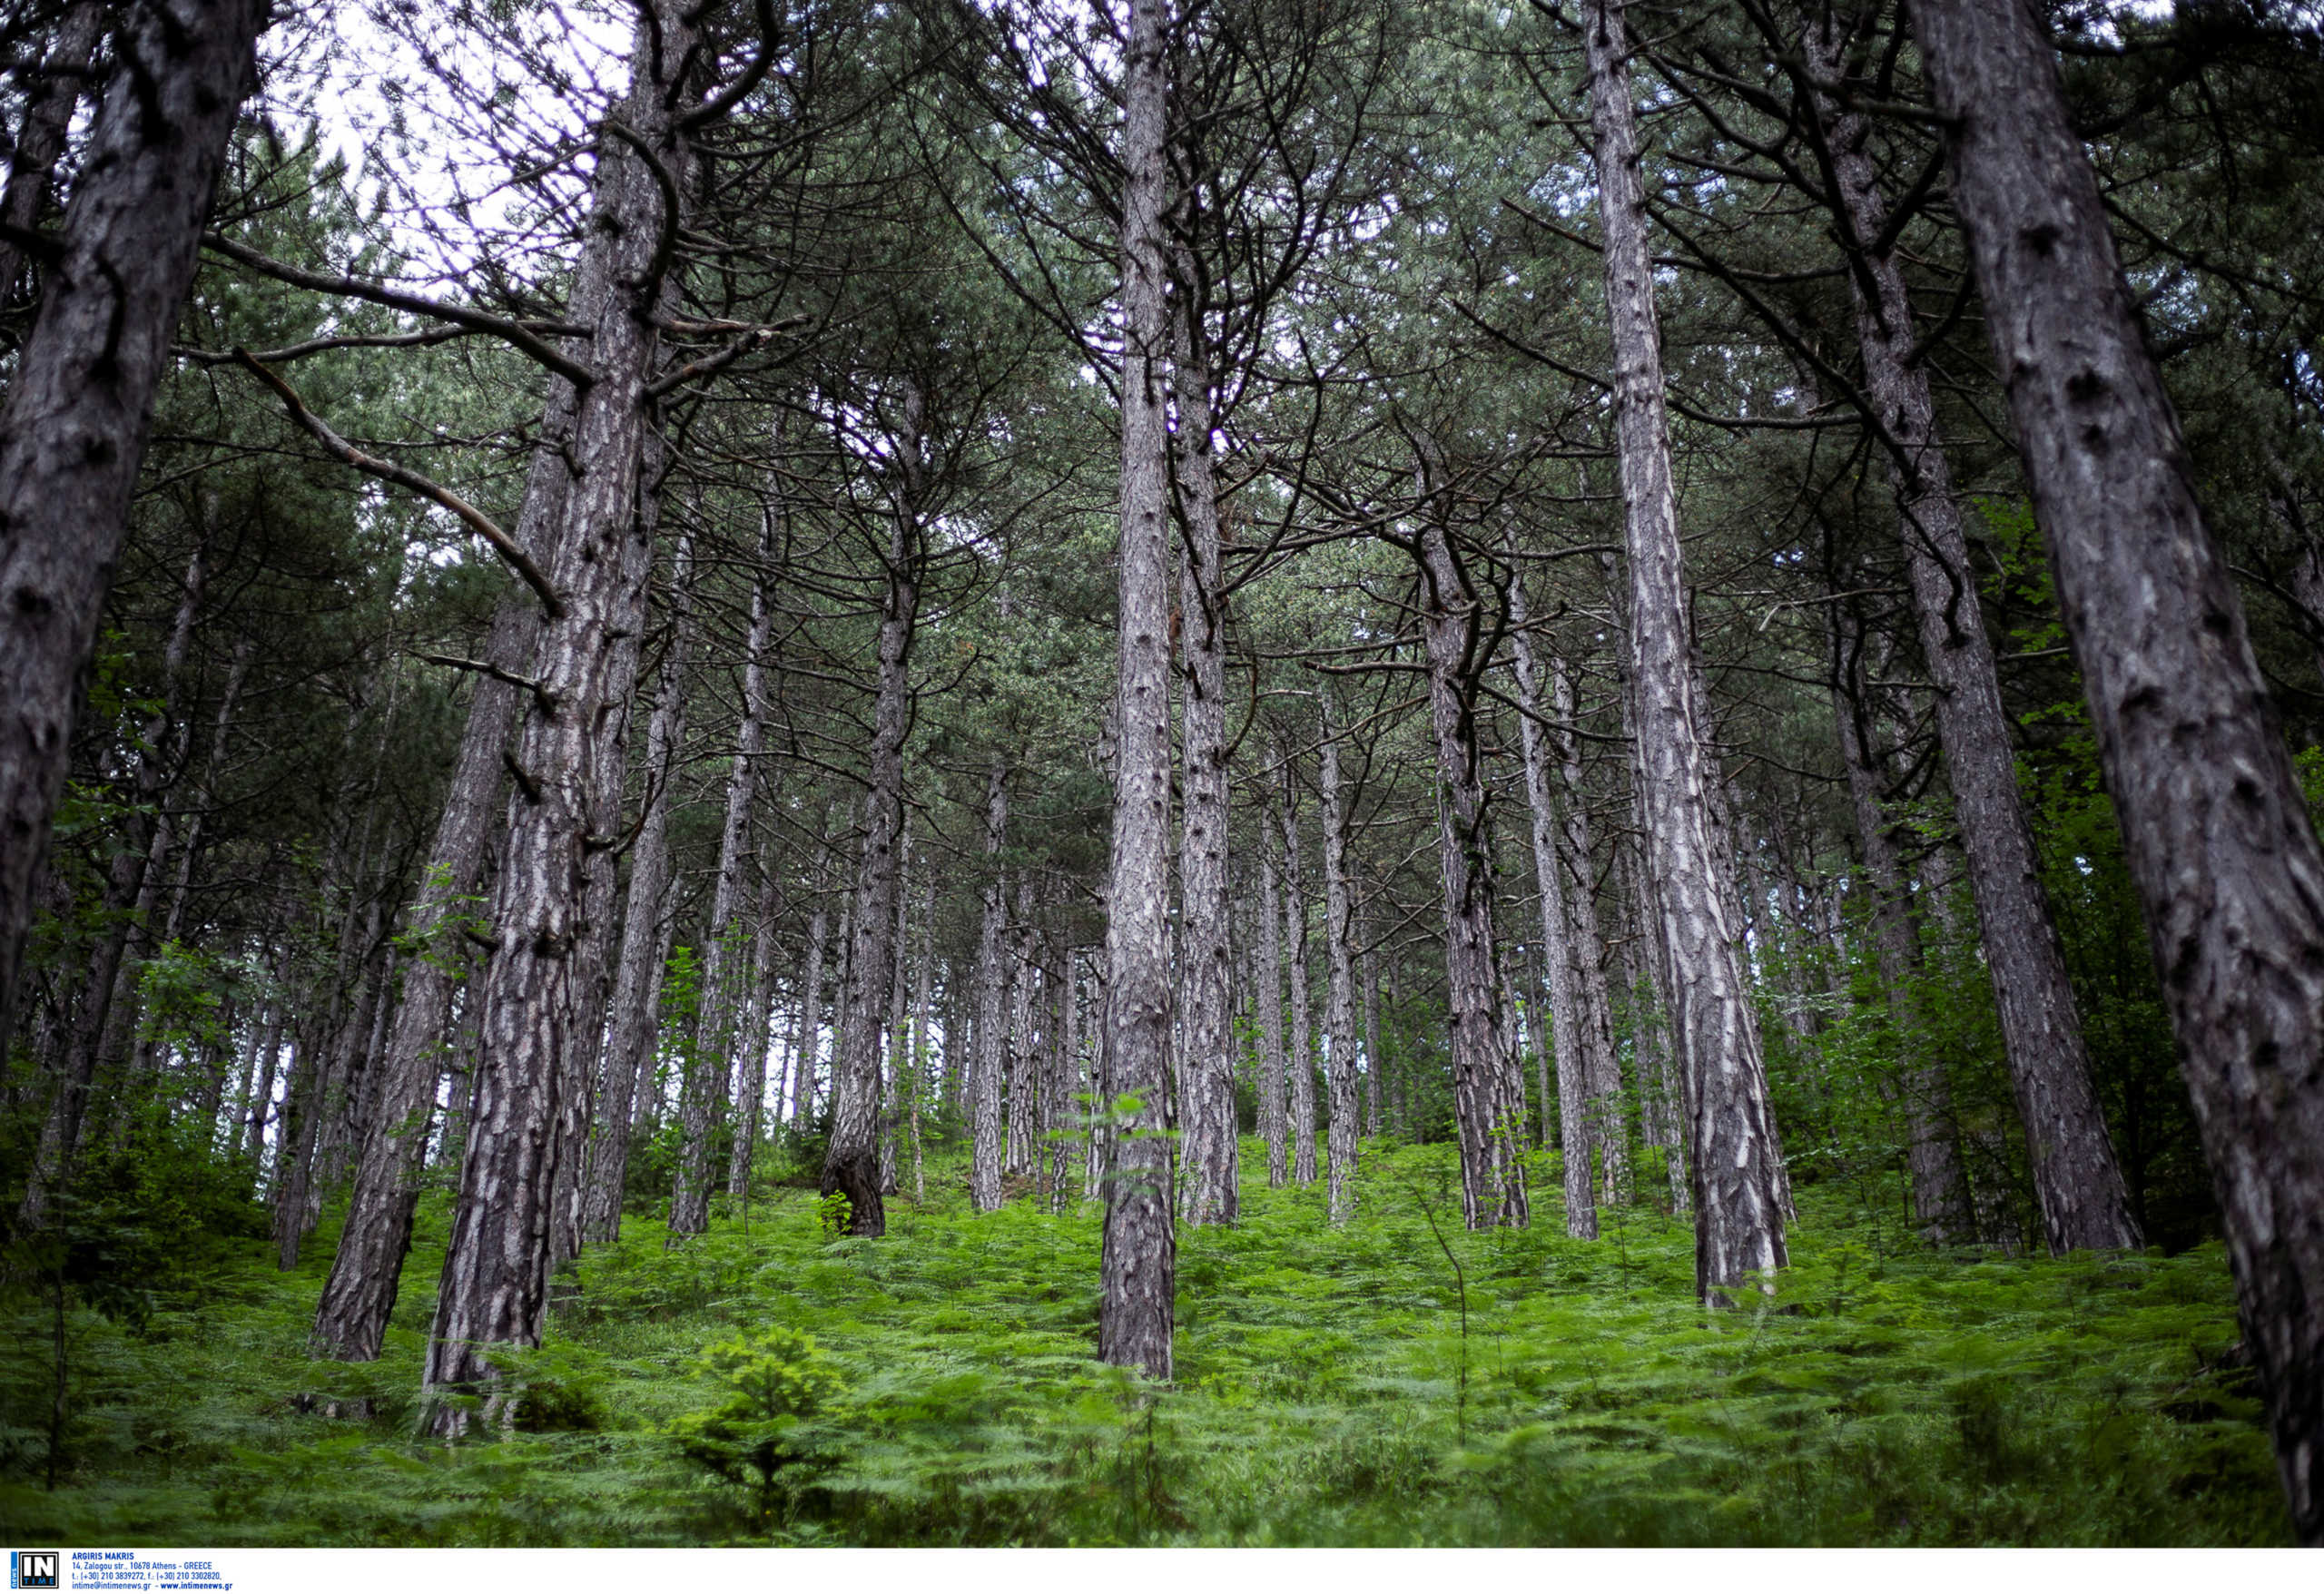 Θεσσαλονίκη: Δεντροφύτευση από φοιτητές! Εκατοντάδες δέντρα σε δημόσια έκταση στο Τριάδι